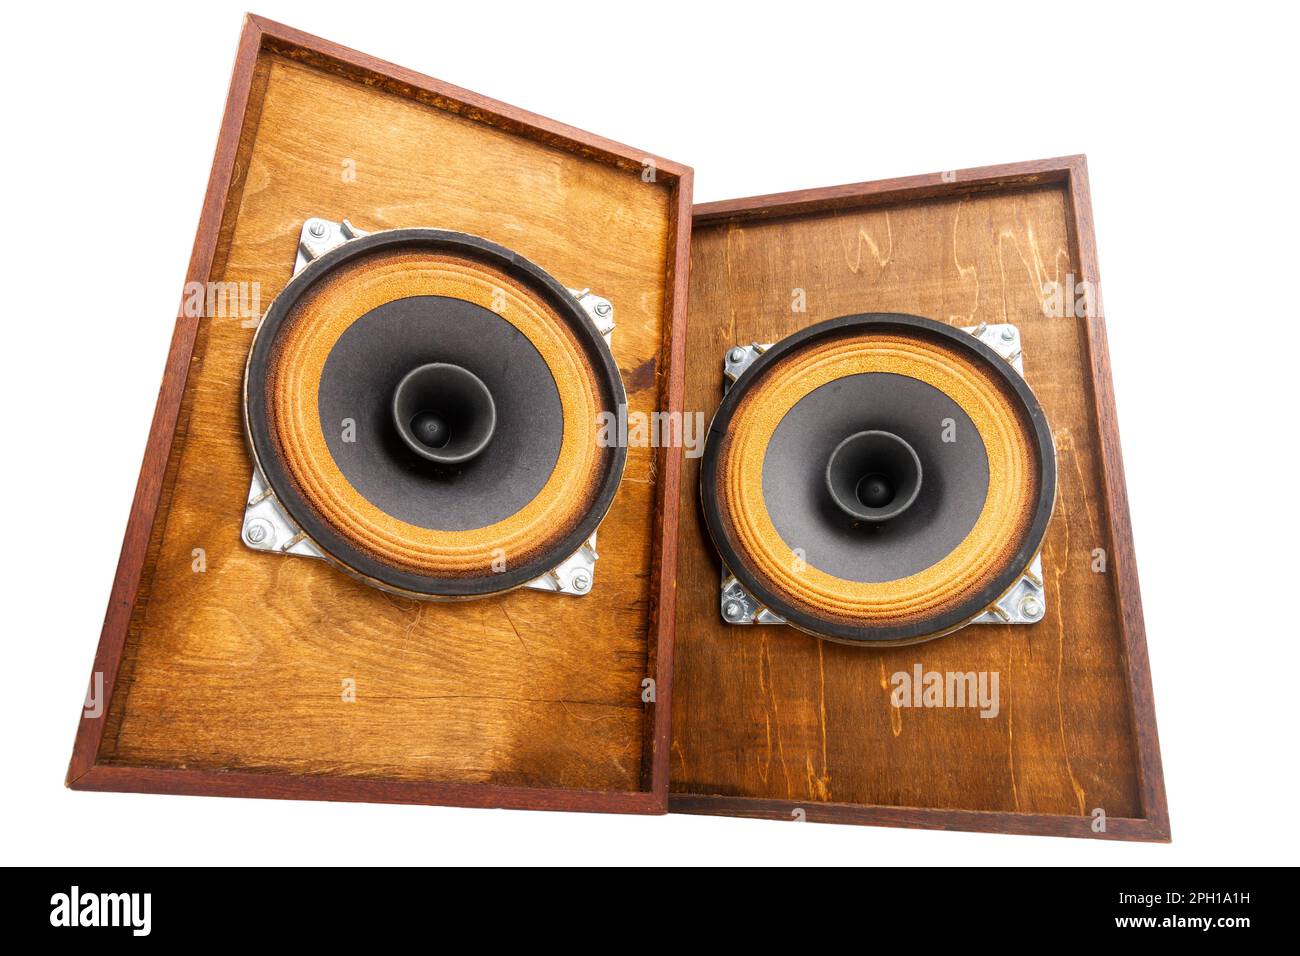 Zwei Vintage-Lautsprecher mit Vollbereichslautsprechern, isoliert auf  weißem Hintergrund Stockfotografie - Alamy